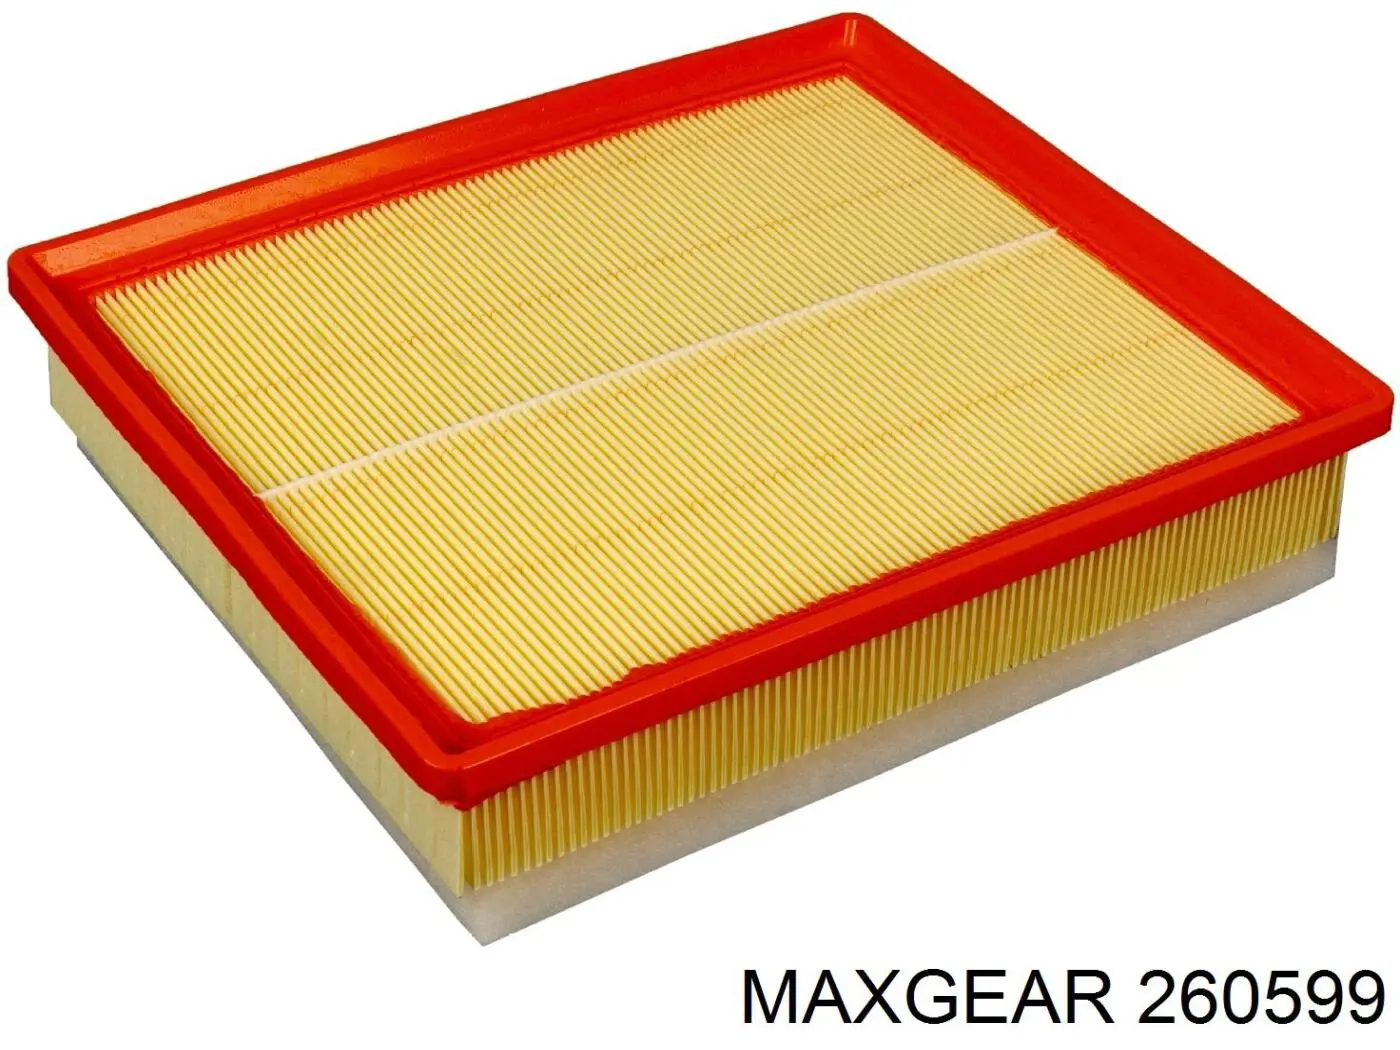 260599 Maxgear filtro de aire